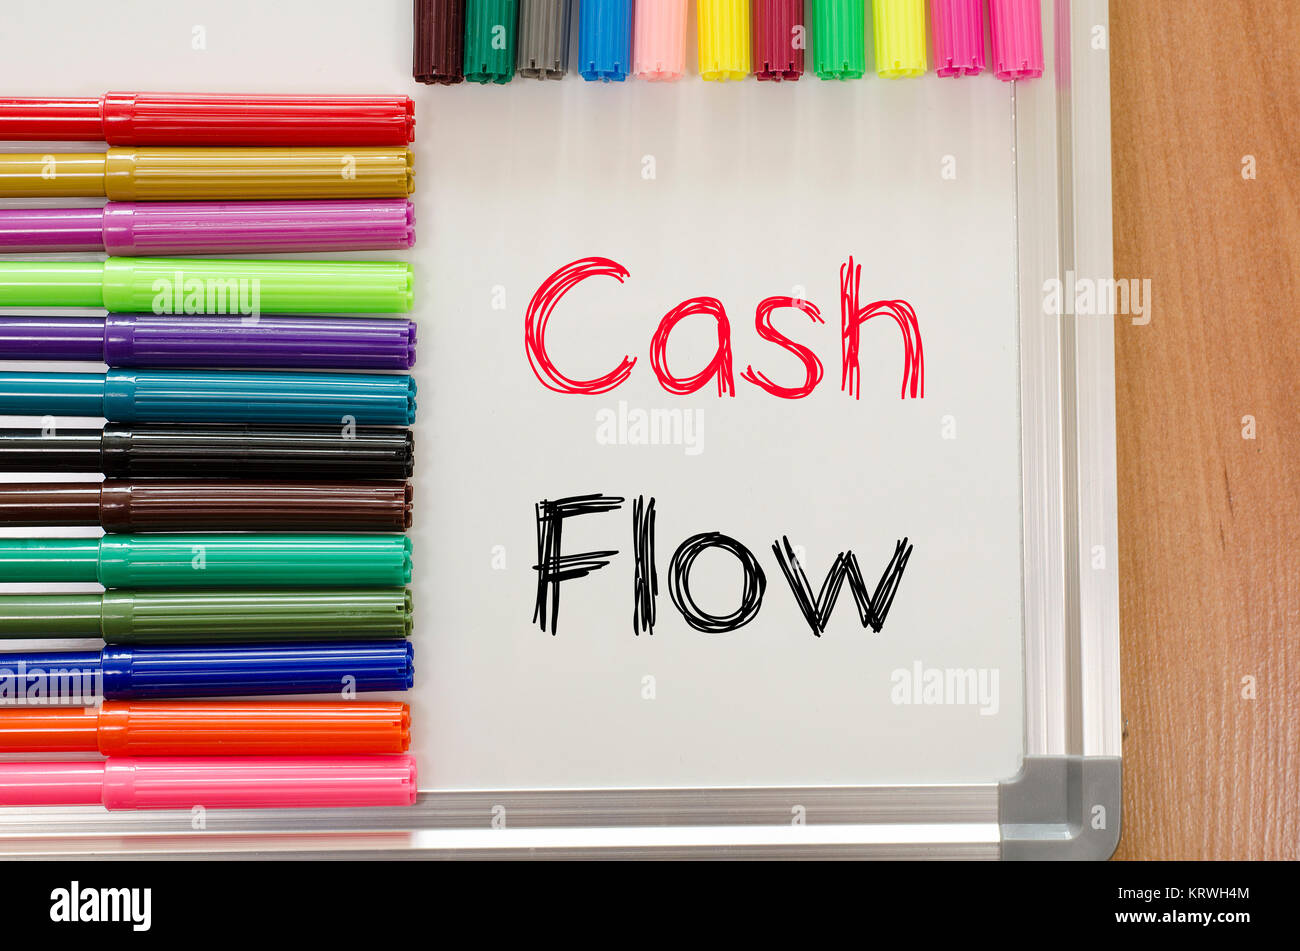 Cash flow text concept Stock Photo